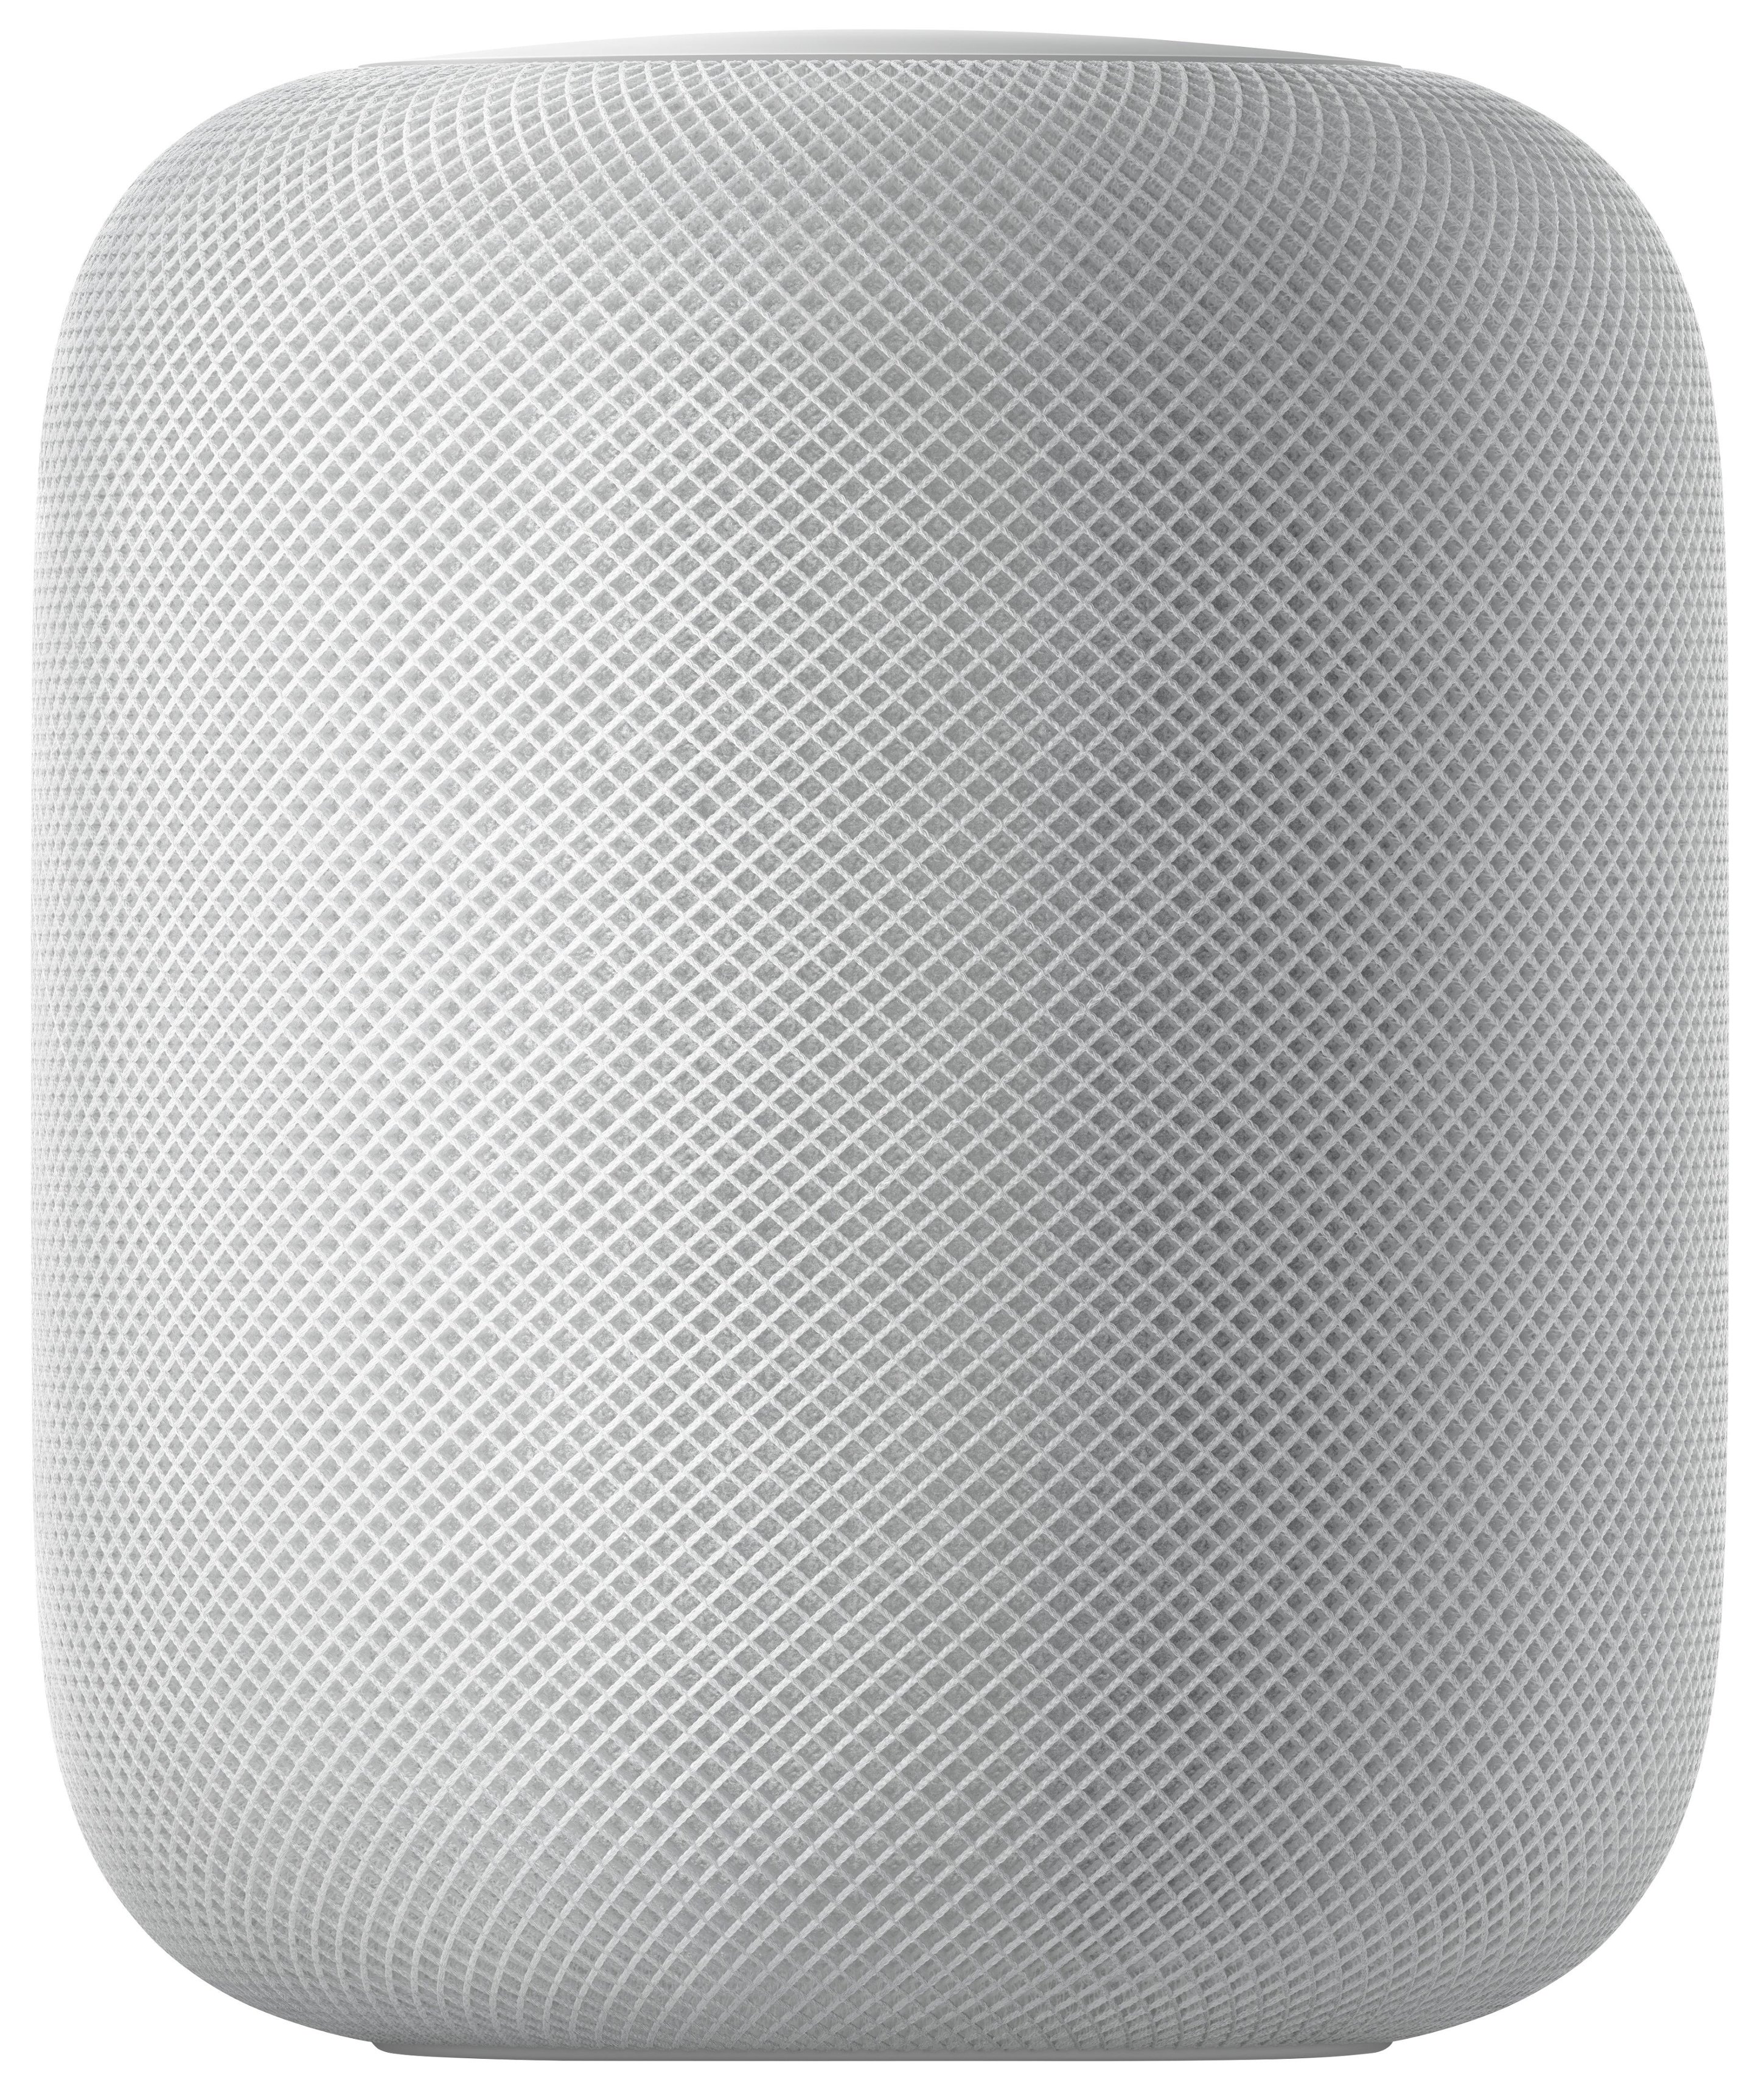 オーディオ機器 スピーカー Apple HomePod White MQHV2LL/A - Best Buy